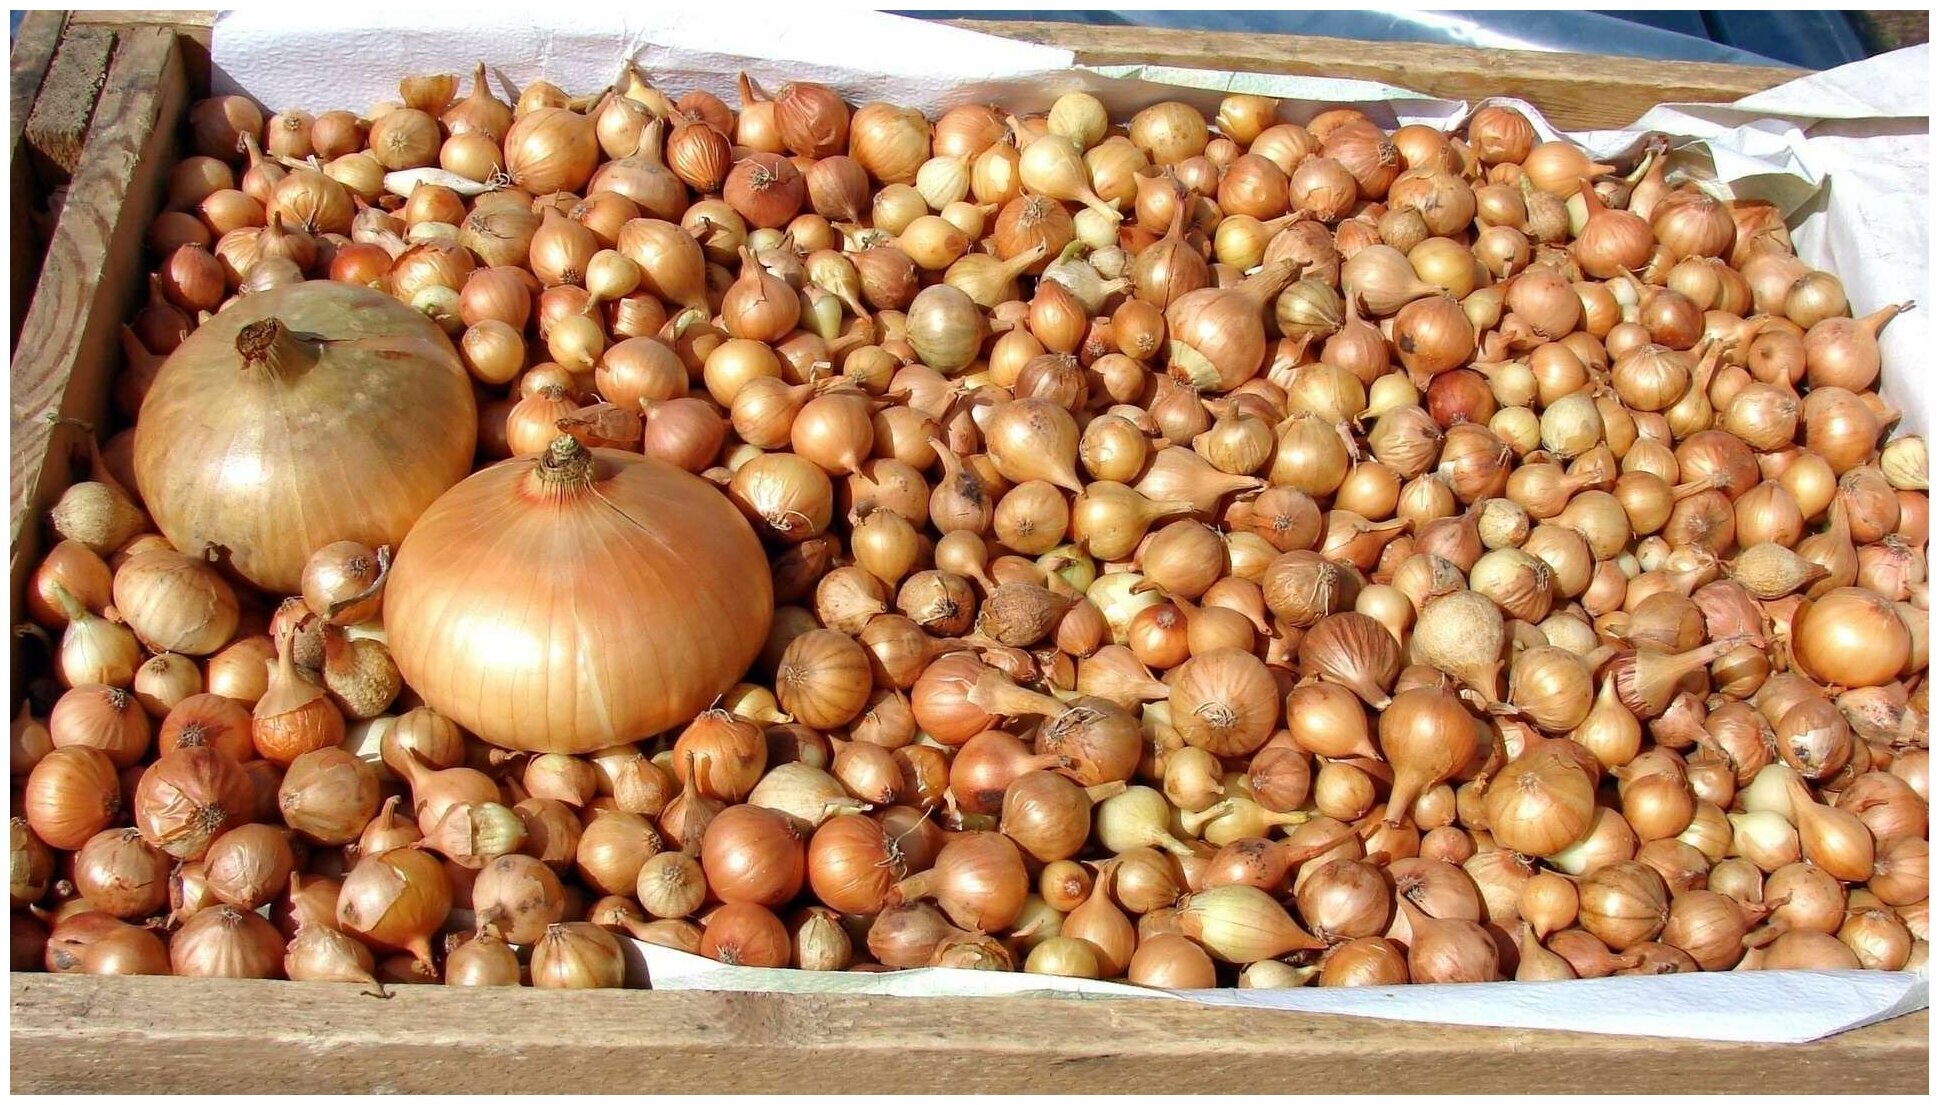 Лук-севок Штутгартер Ризен, 0.5 кг, высокоурожайный сорт с плодами плоскоокруглой формы. Обладает сочной мякотью и острым вкусом. Хорошая урожайность